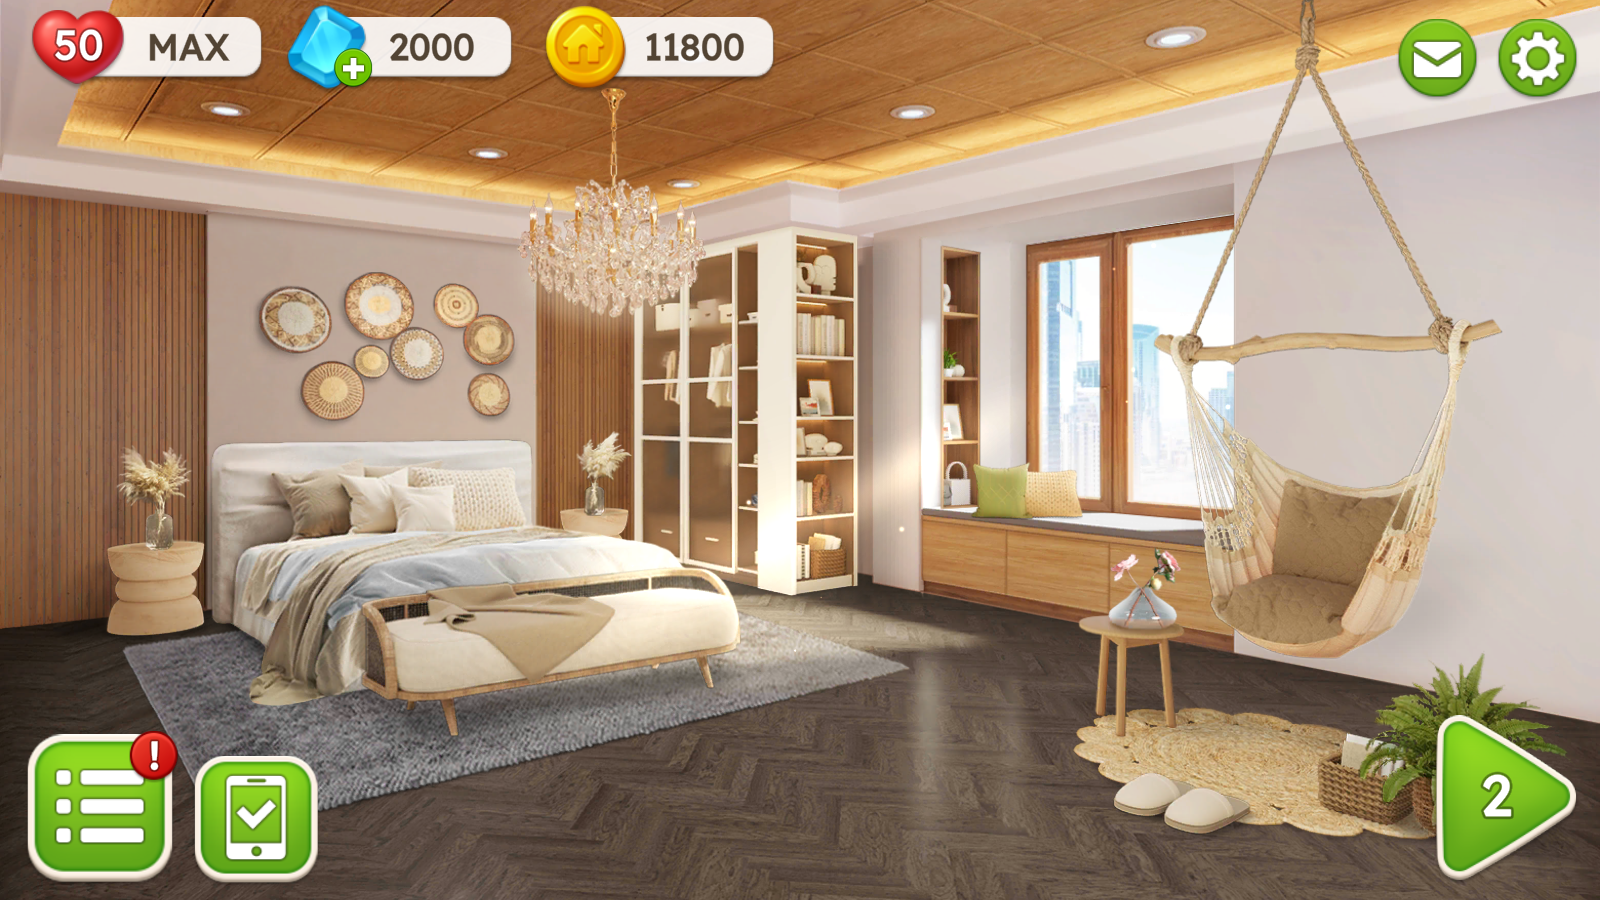 甜蜜之家房屋设计游戏无限金币爱心v22.0106.02正式版截图3